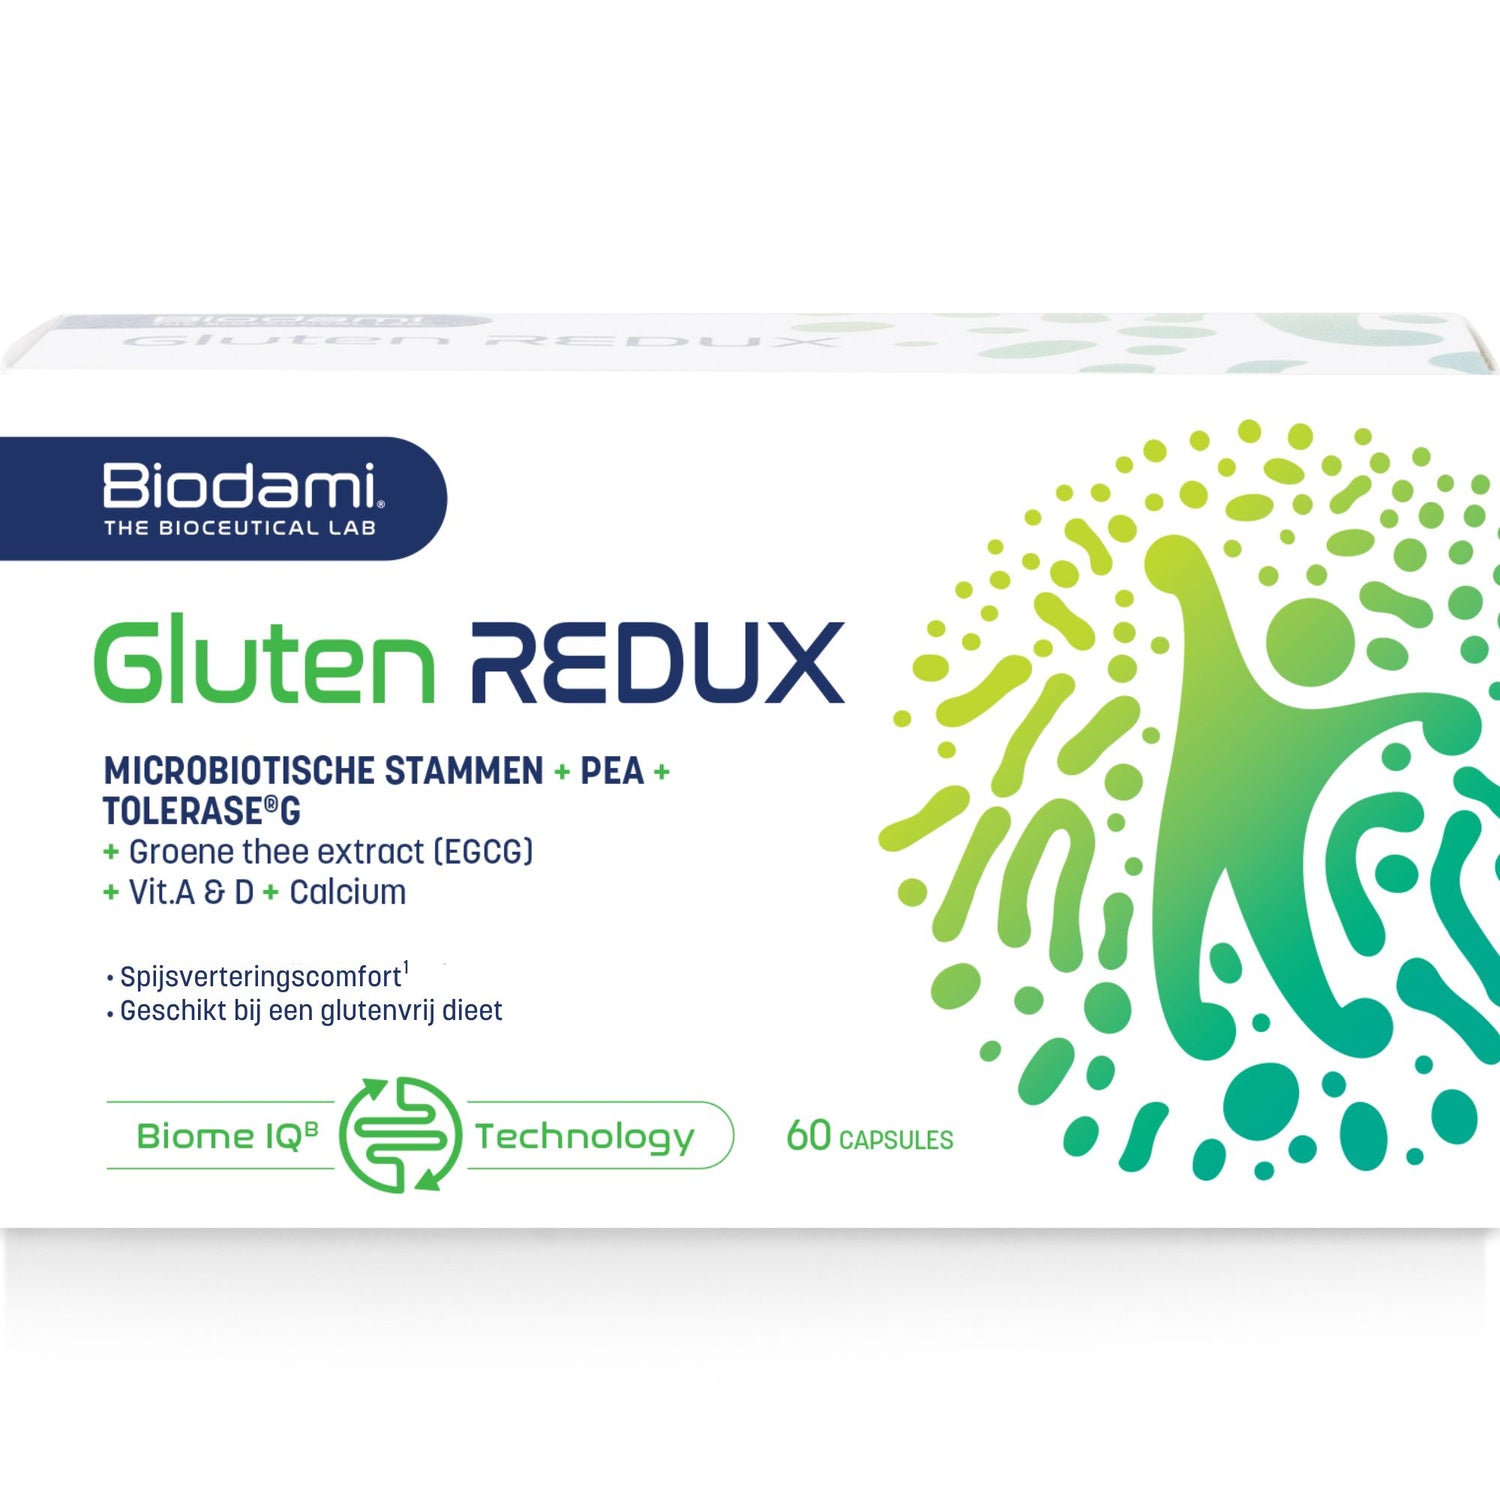 Sandalen Verdwijnen spectrum Gluten REDUX - Voedingssupplement met probiotica en gluten enzym – BIODAMI